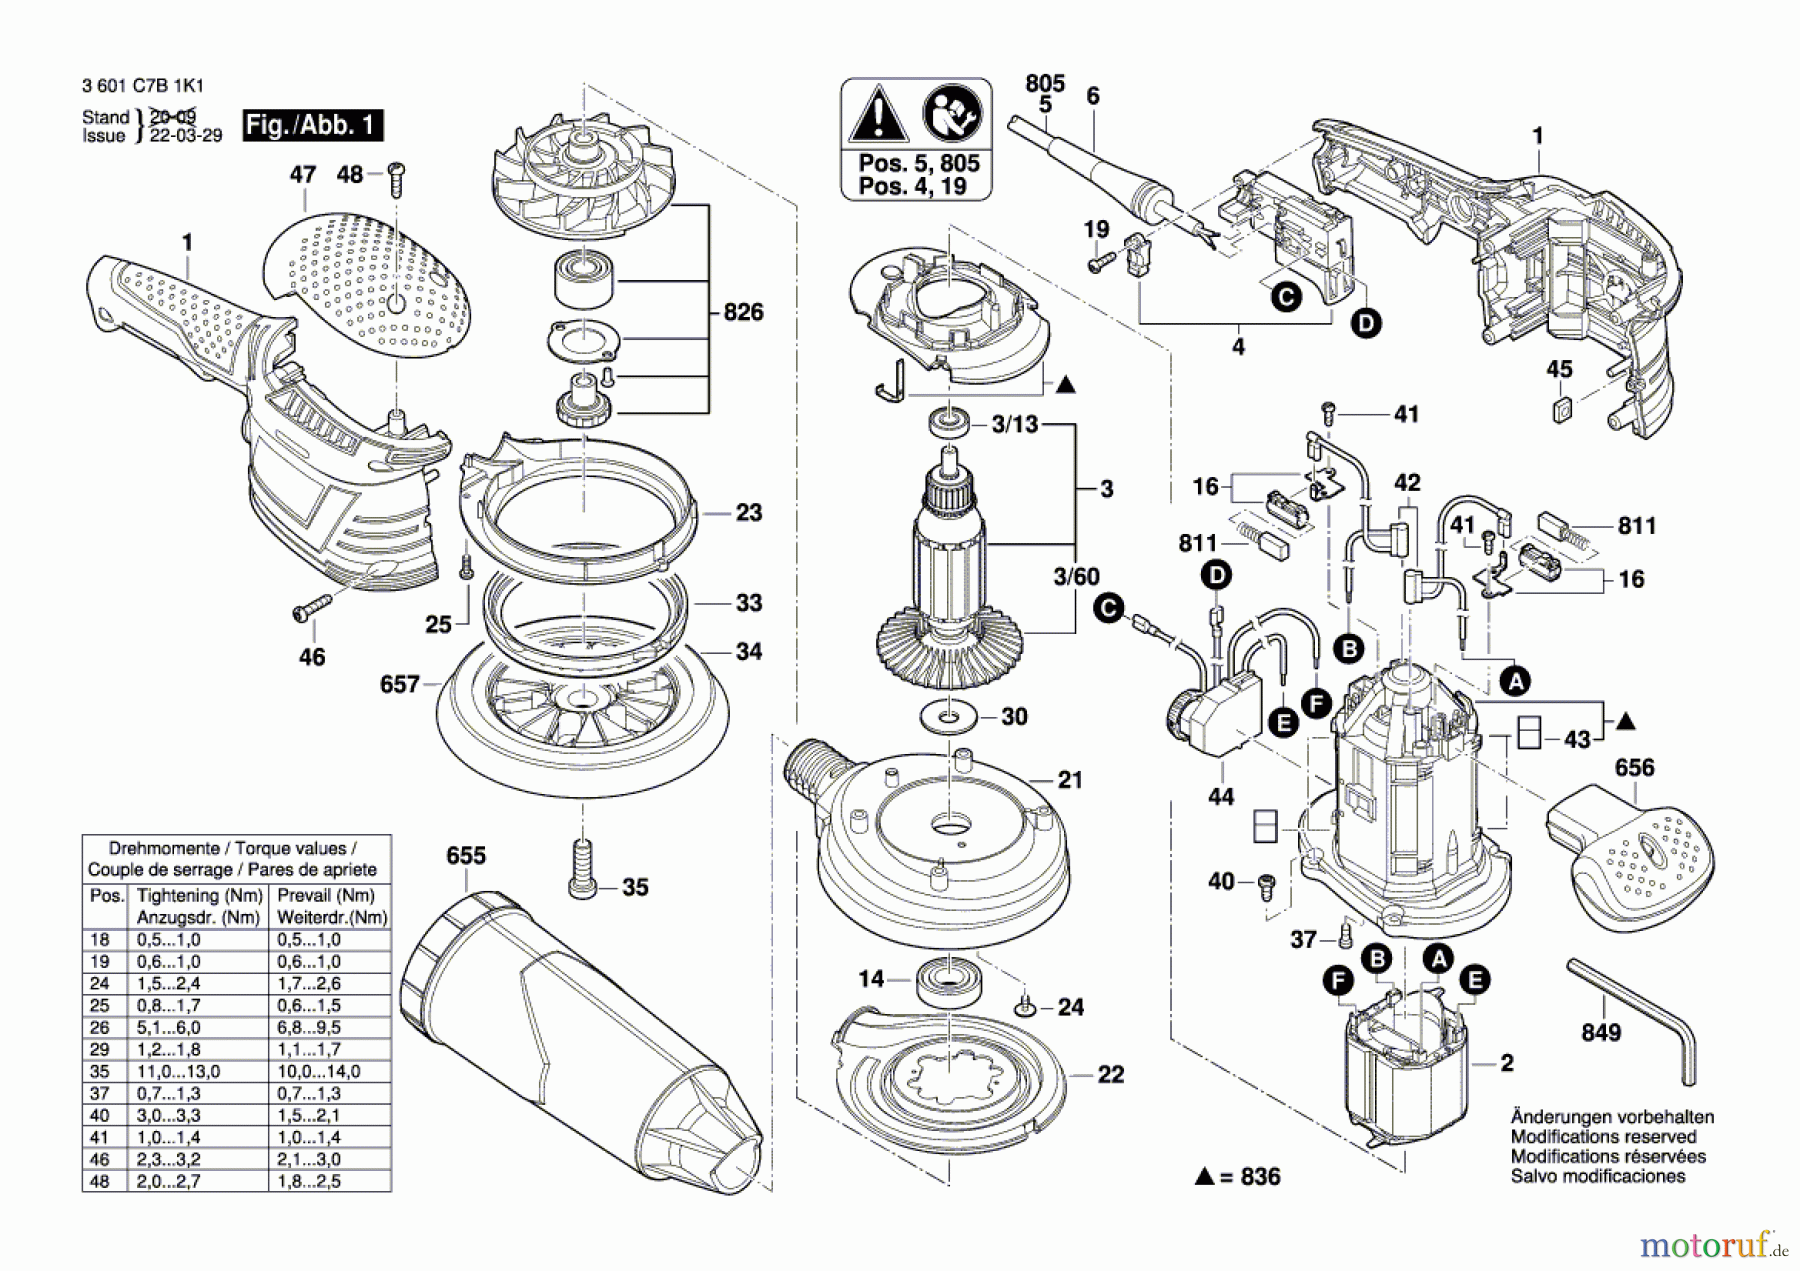  Bosch Werkzeug Exzenterschleifer GEX 125-150 AVE Seite 1